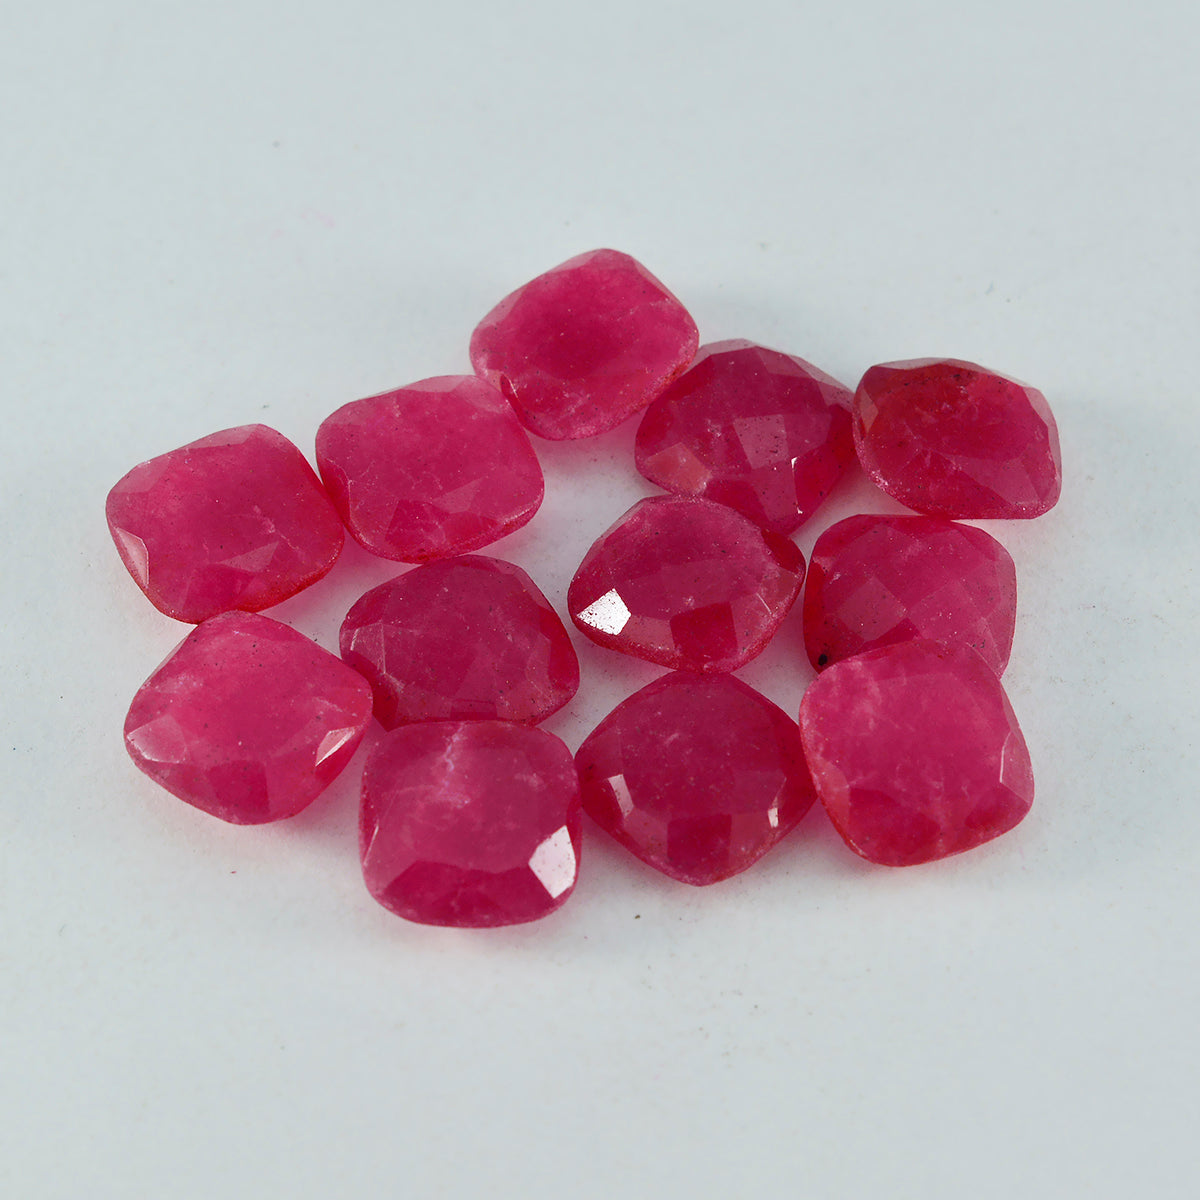 riyogems 1 шт. натуральная красная яшма ограненная 5x5 мм в форме подушки потрясающее качество свободный драгоценный камень